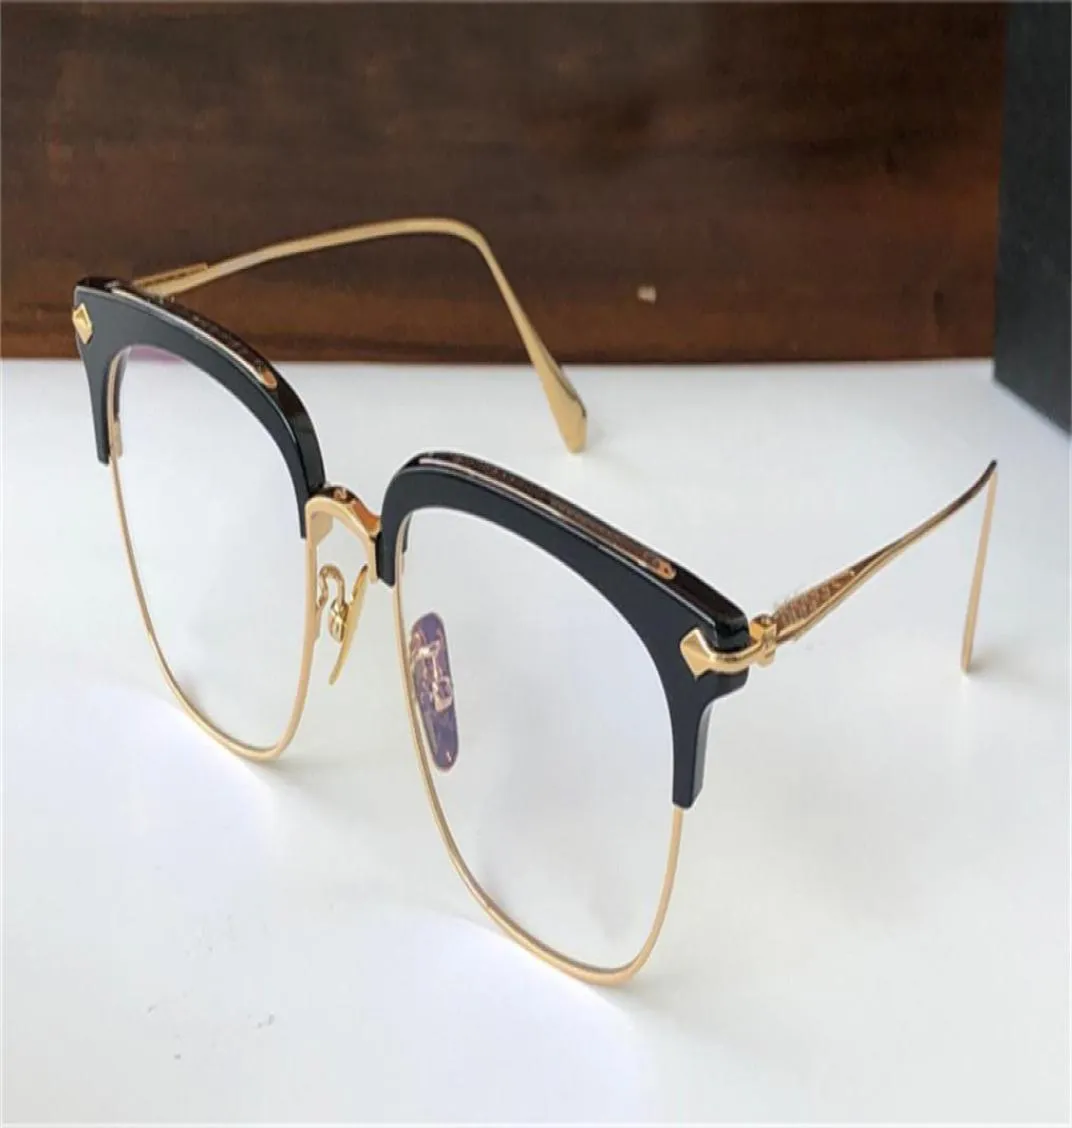 新しい眼鏡フレームメガネSluntradicti Men Eyeglasses Design Halfframe Glasses vintage Steampunk Style with Case9371697